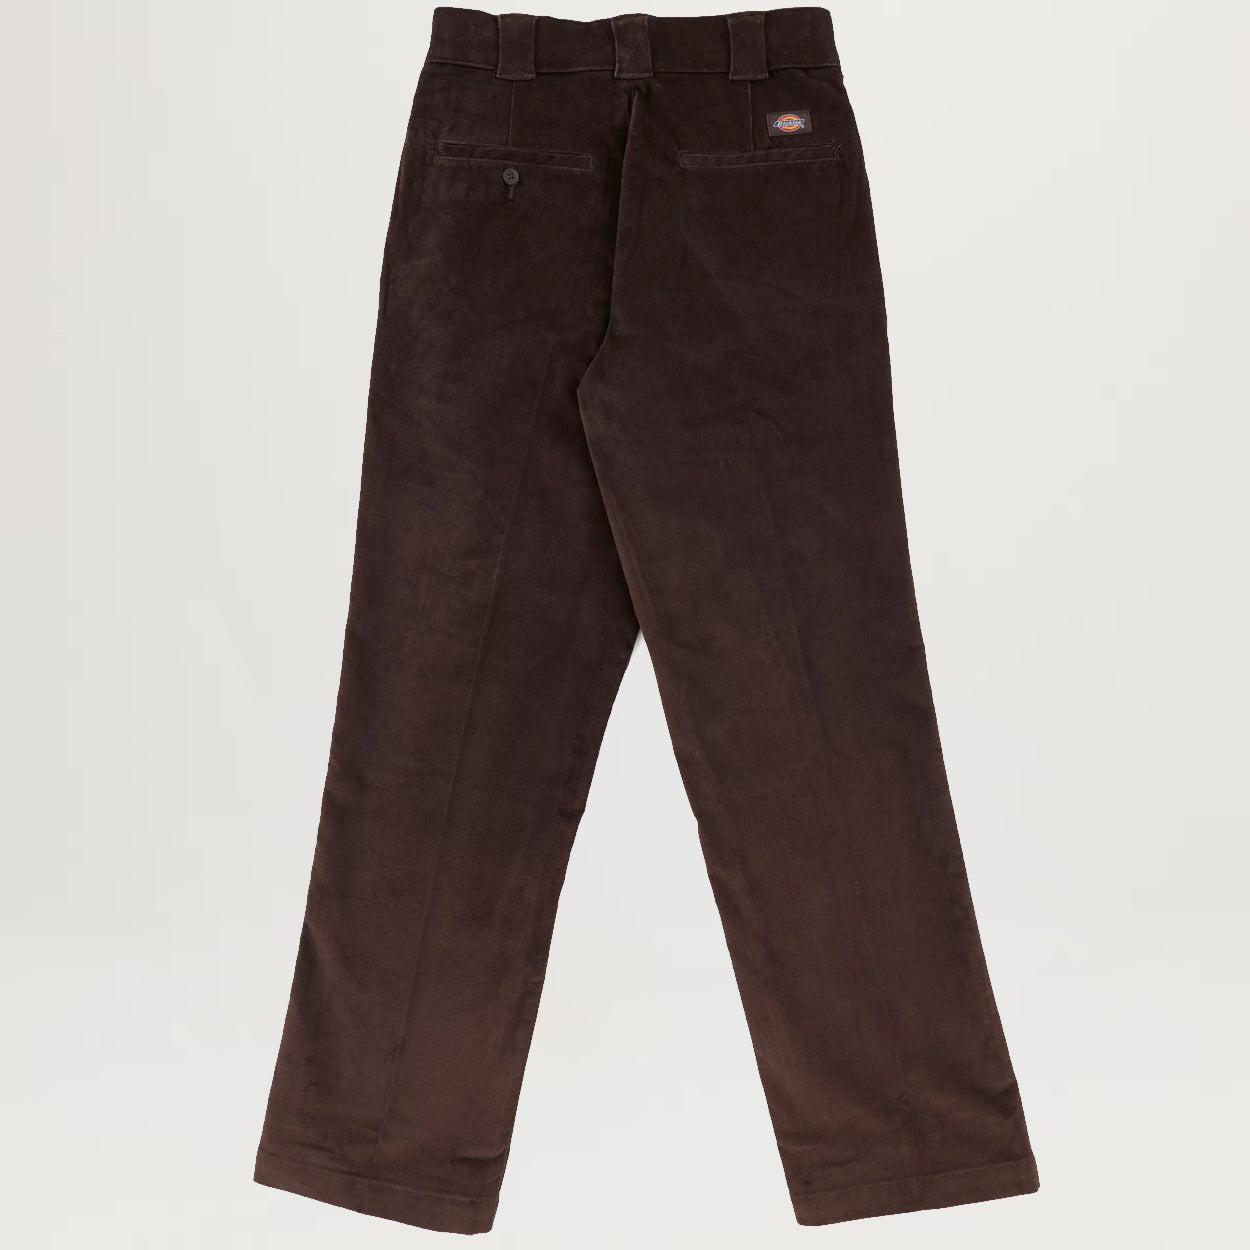 Dickies Original Fit 874 Work Pants in stock at SPoT Skate Shop